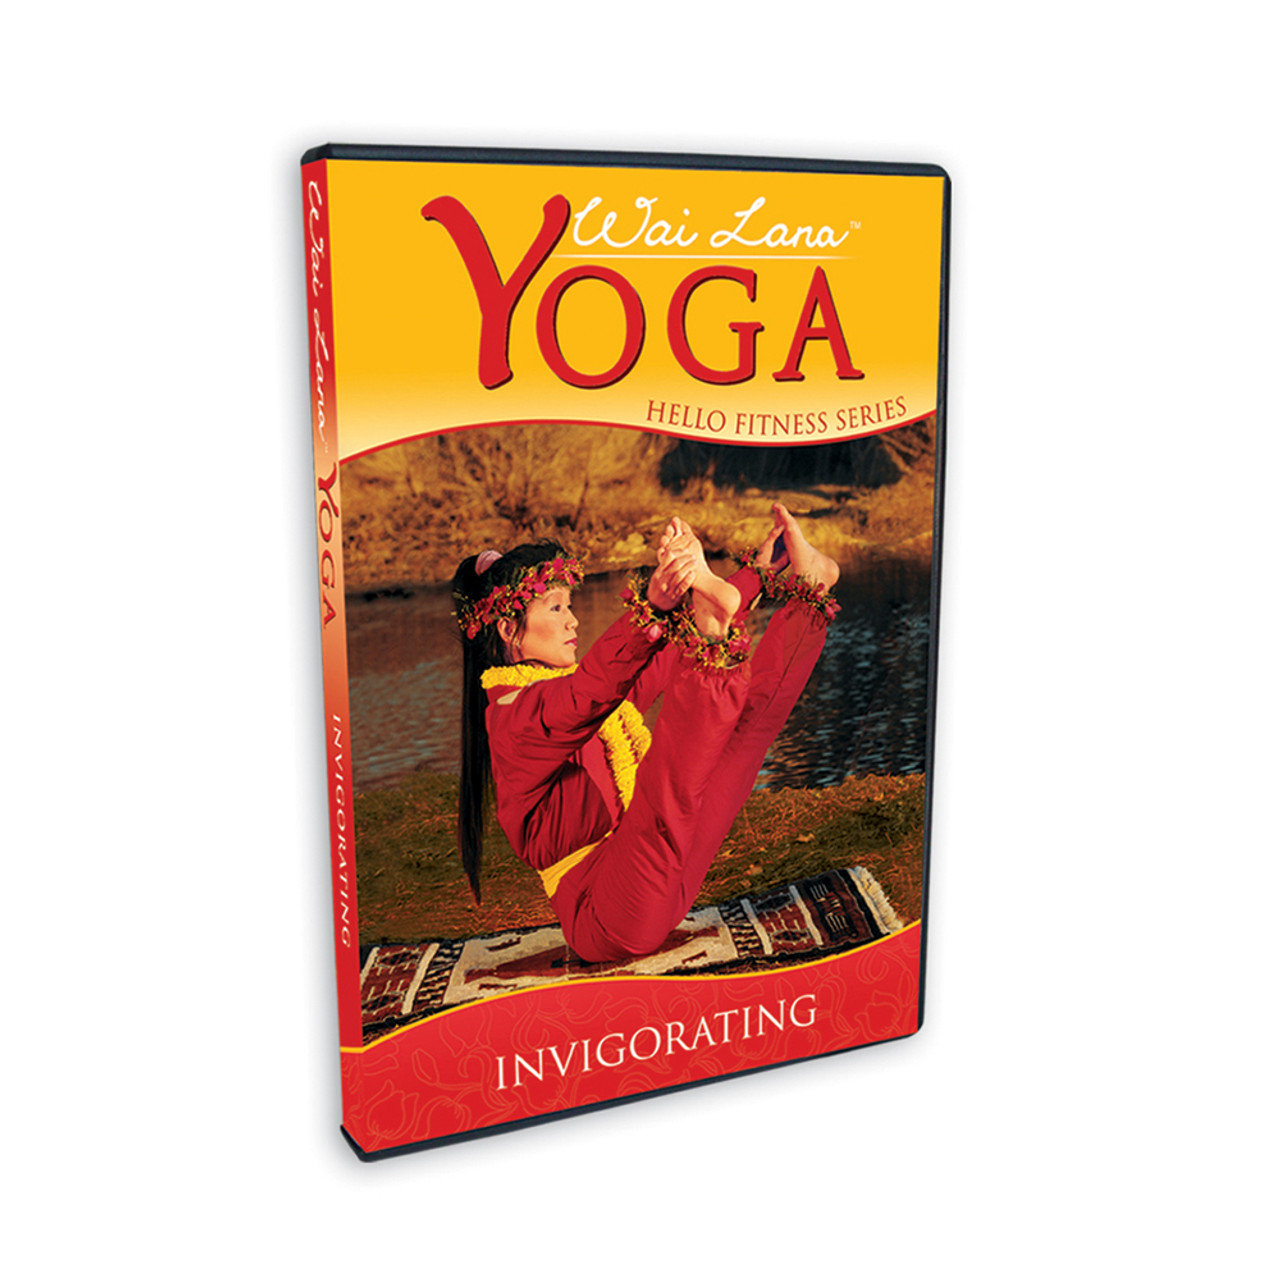 Yoga: Invigorating [DVD]